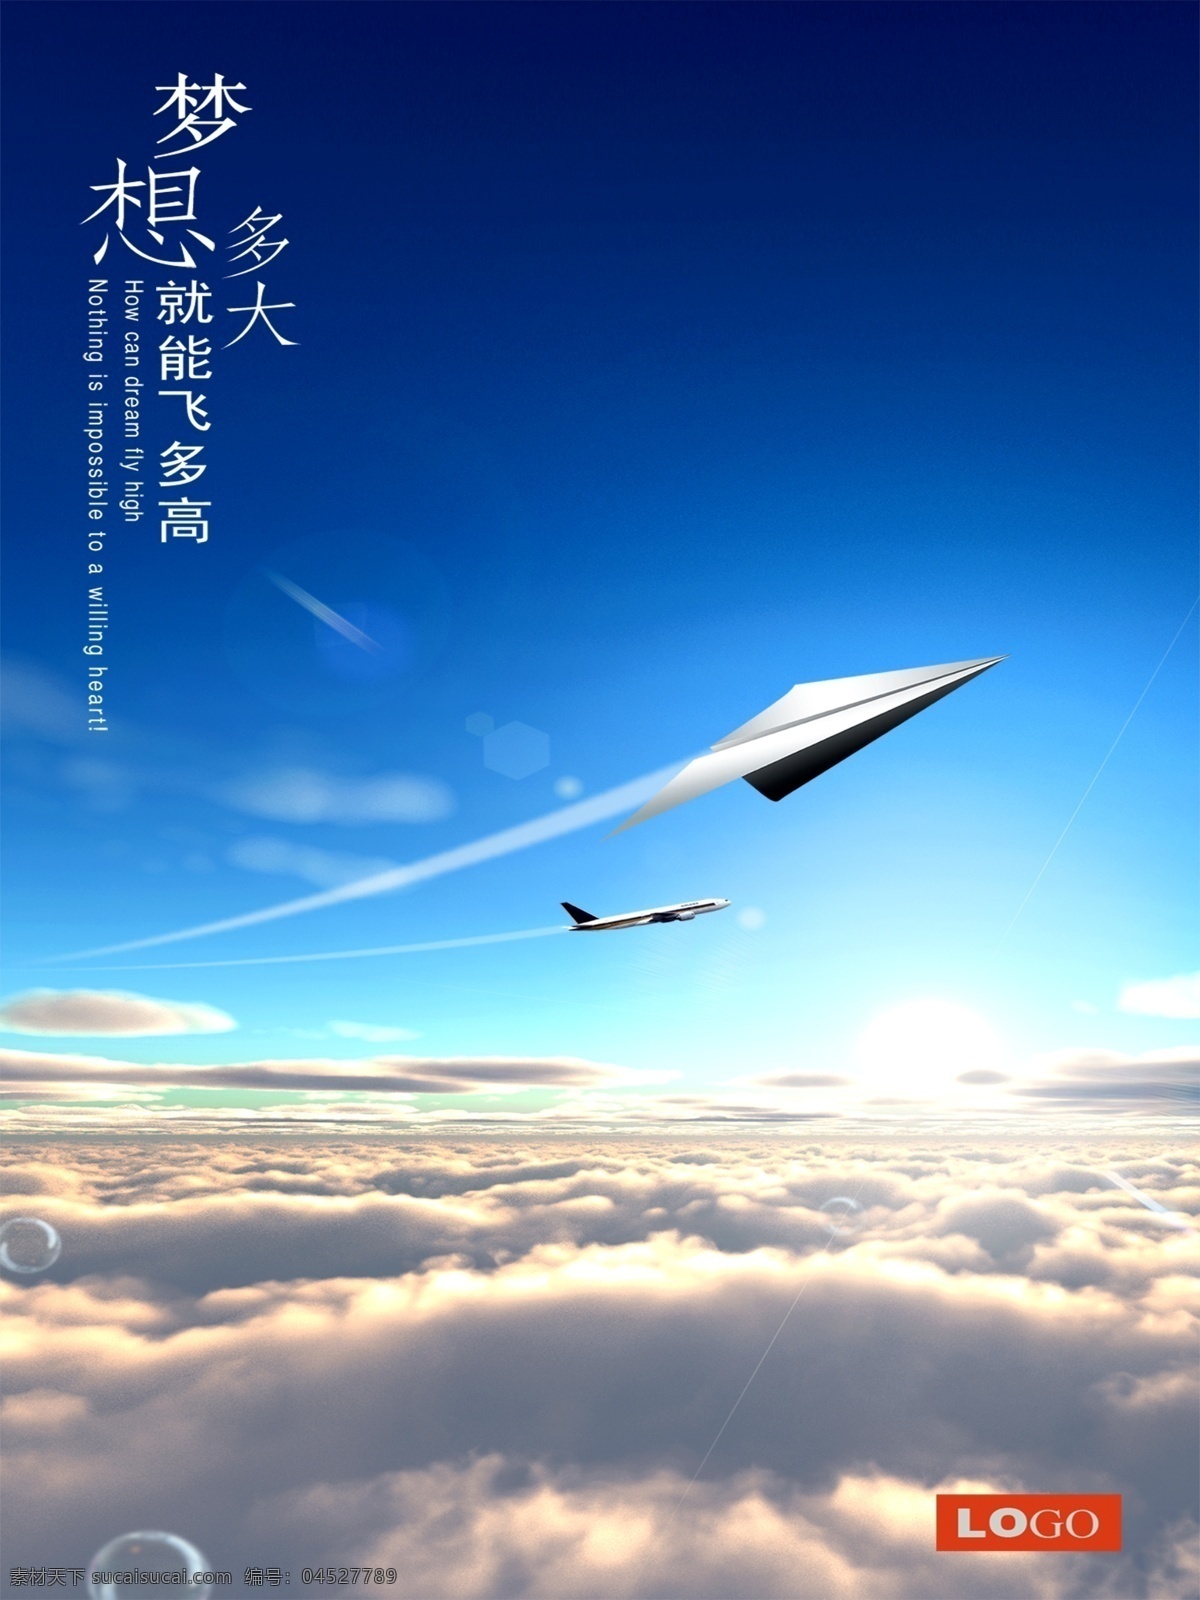 飞机 纸飞机 天空 梦想 白云 蓝天 飞翔 气泡 光芒 光明 理想 启航 起航 超越 300 分层